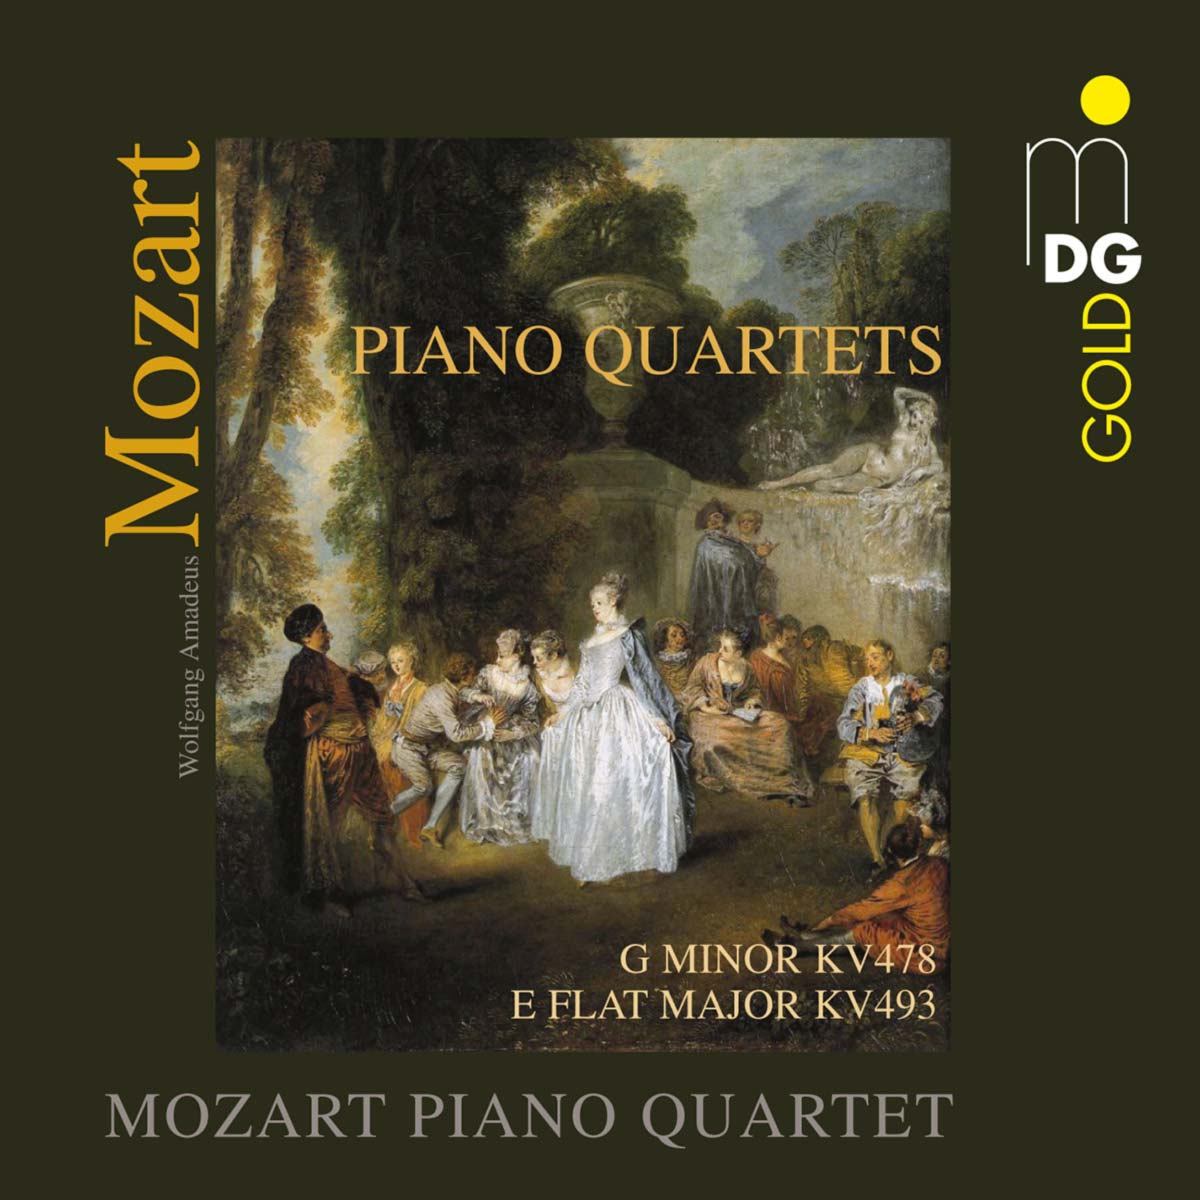 Mozart Piano Quartet – Mozart: Piano Quartets (2009) MCH SACD ISO + Hi-Res FLAC